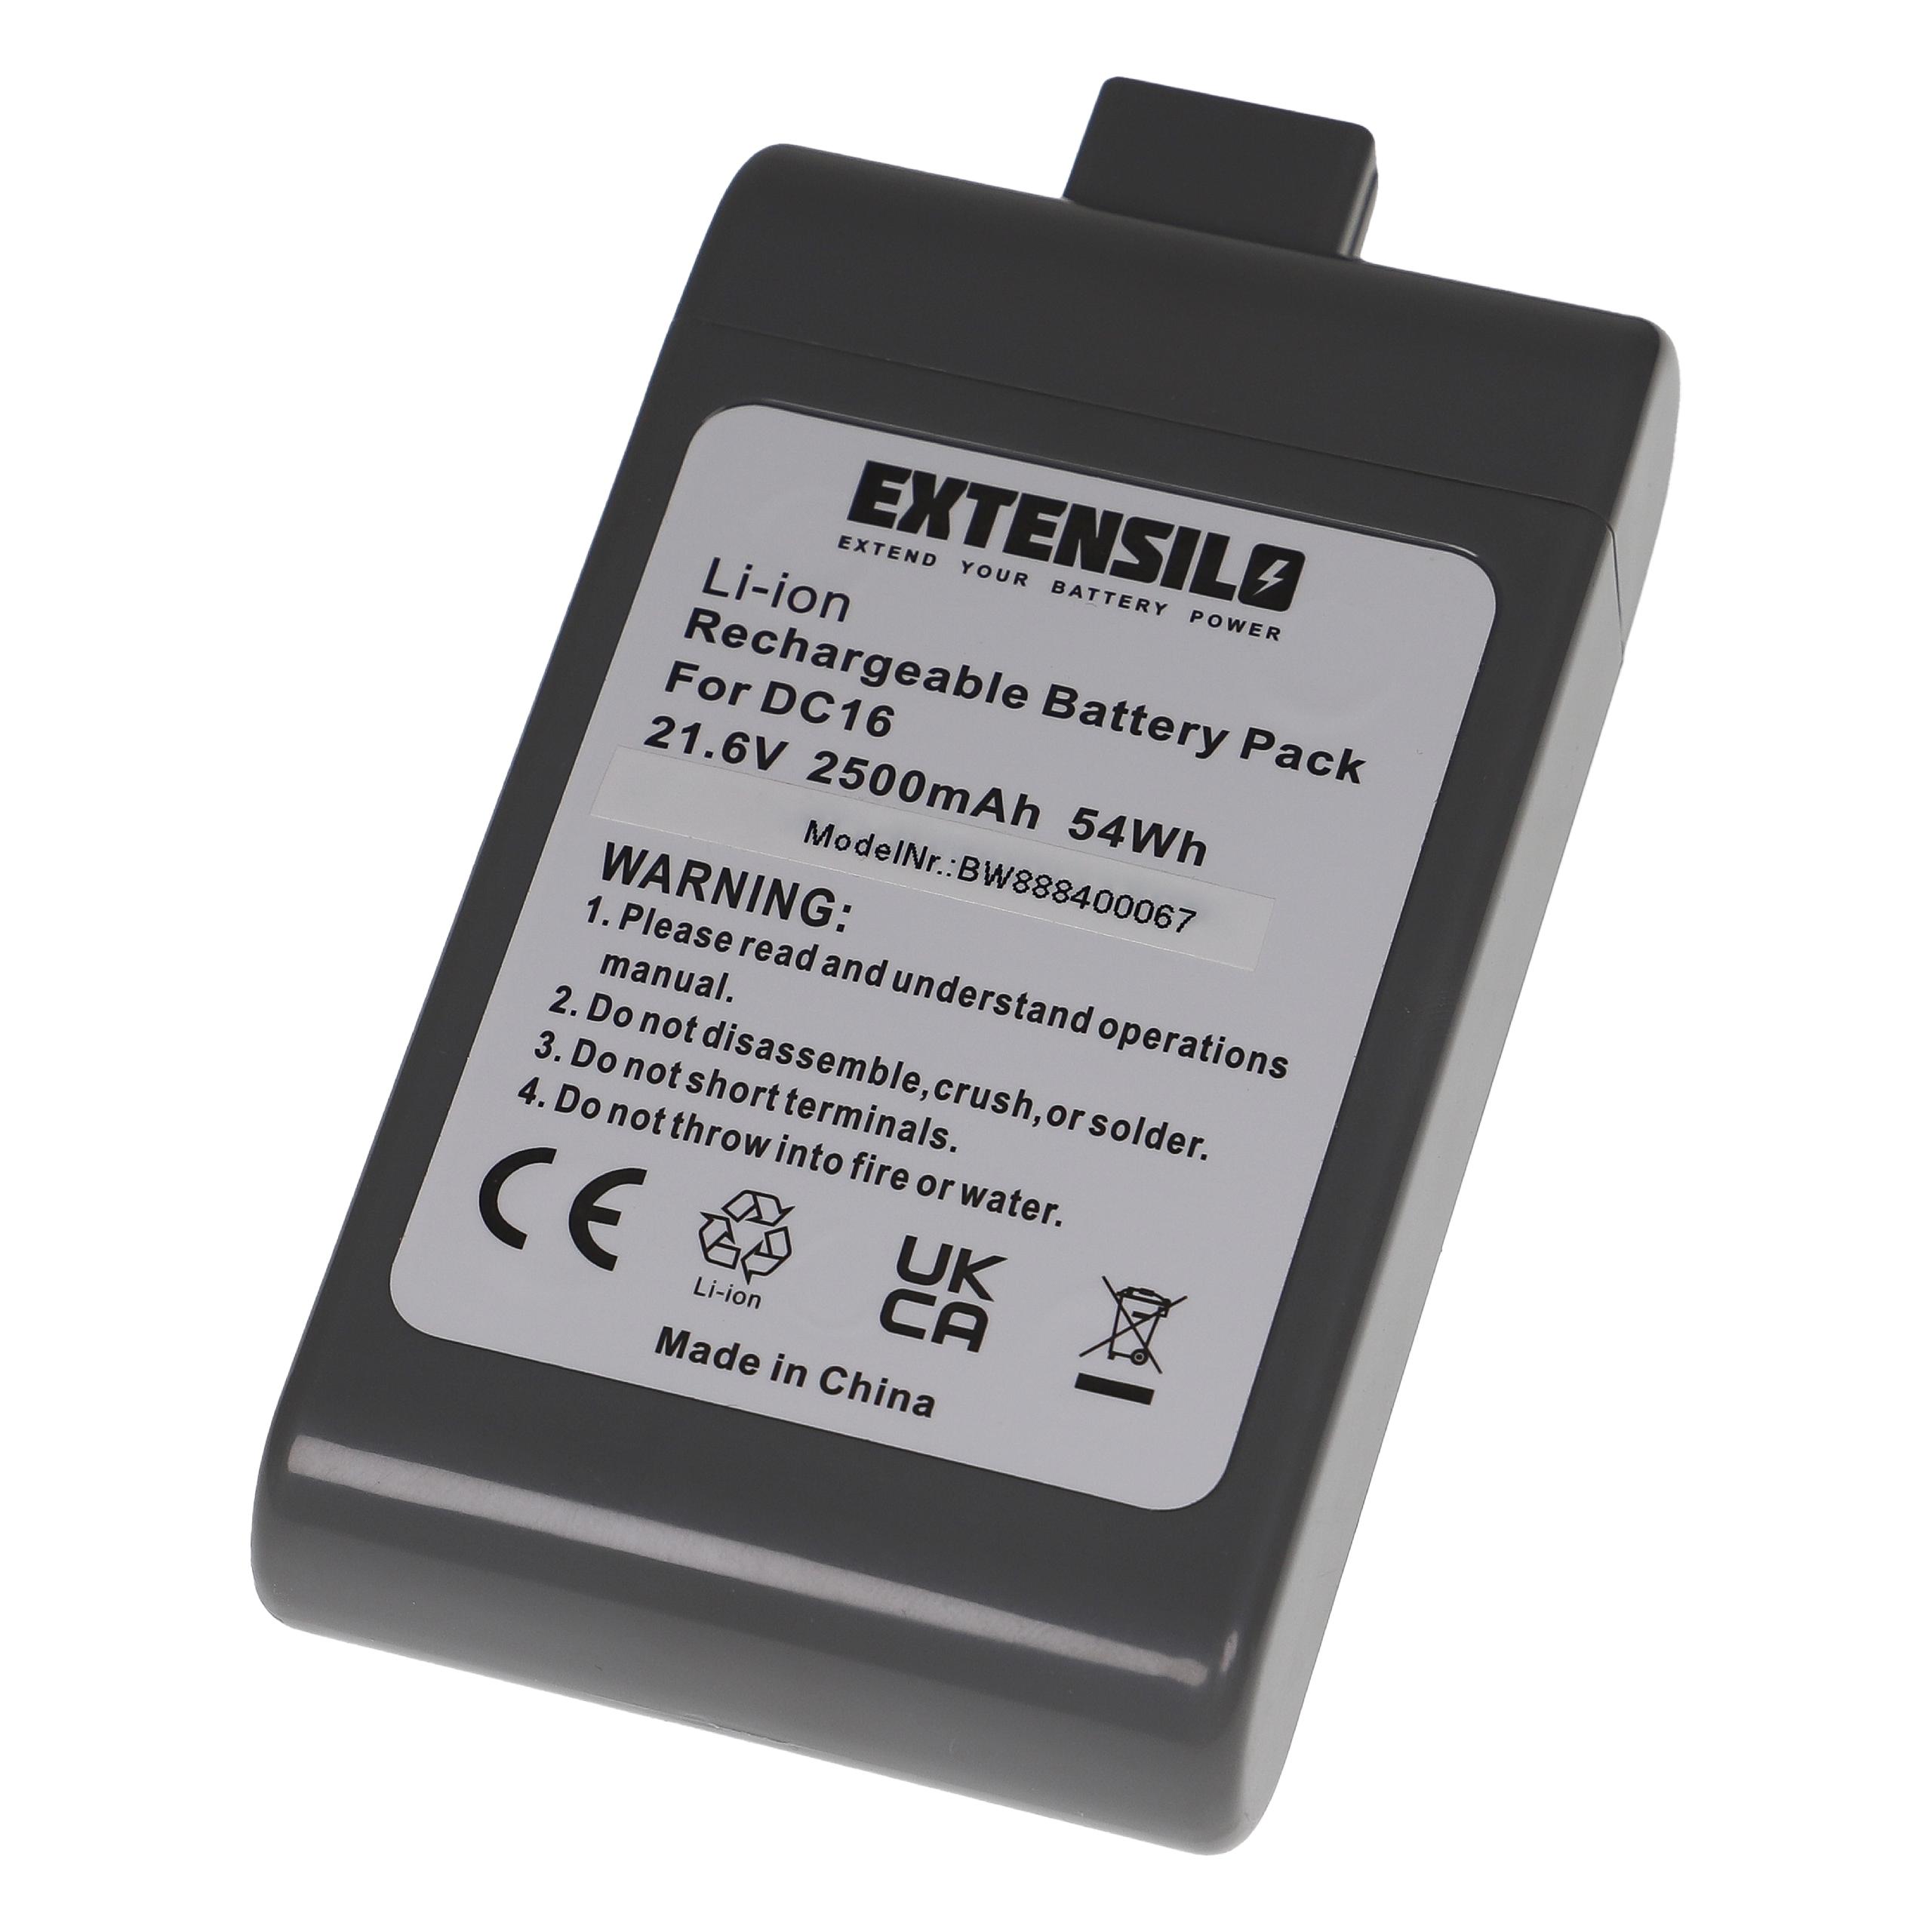 Extensilo Batterie remplace Dyson 912433-03, 912433-01, 12097 pour aspirateur - 2500mAh 21,6V Li-ion